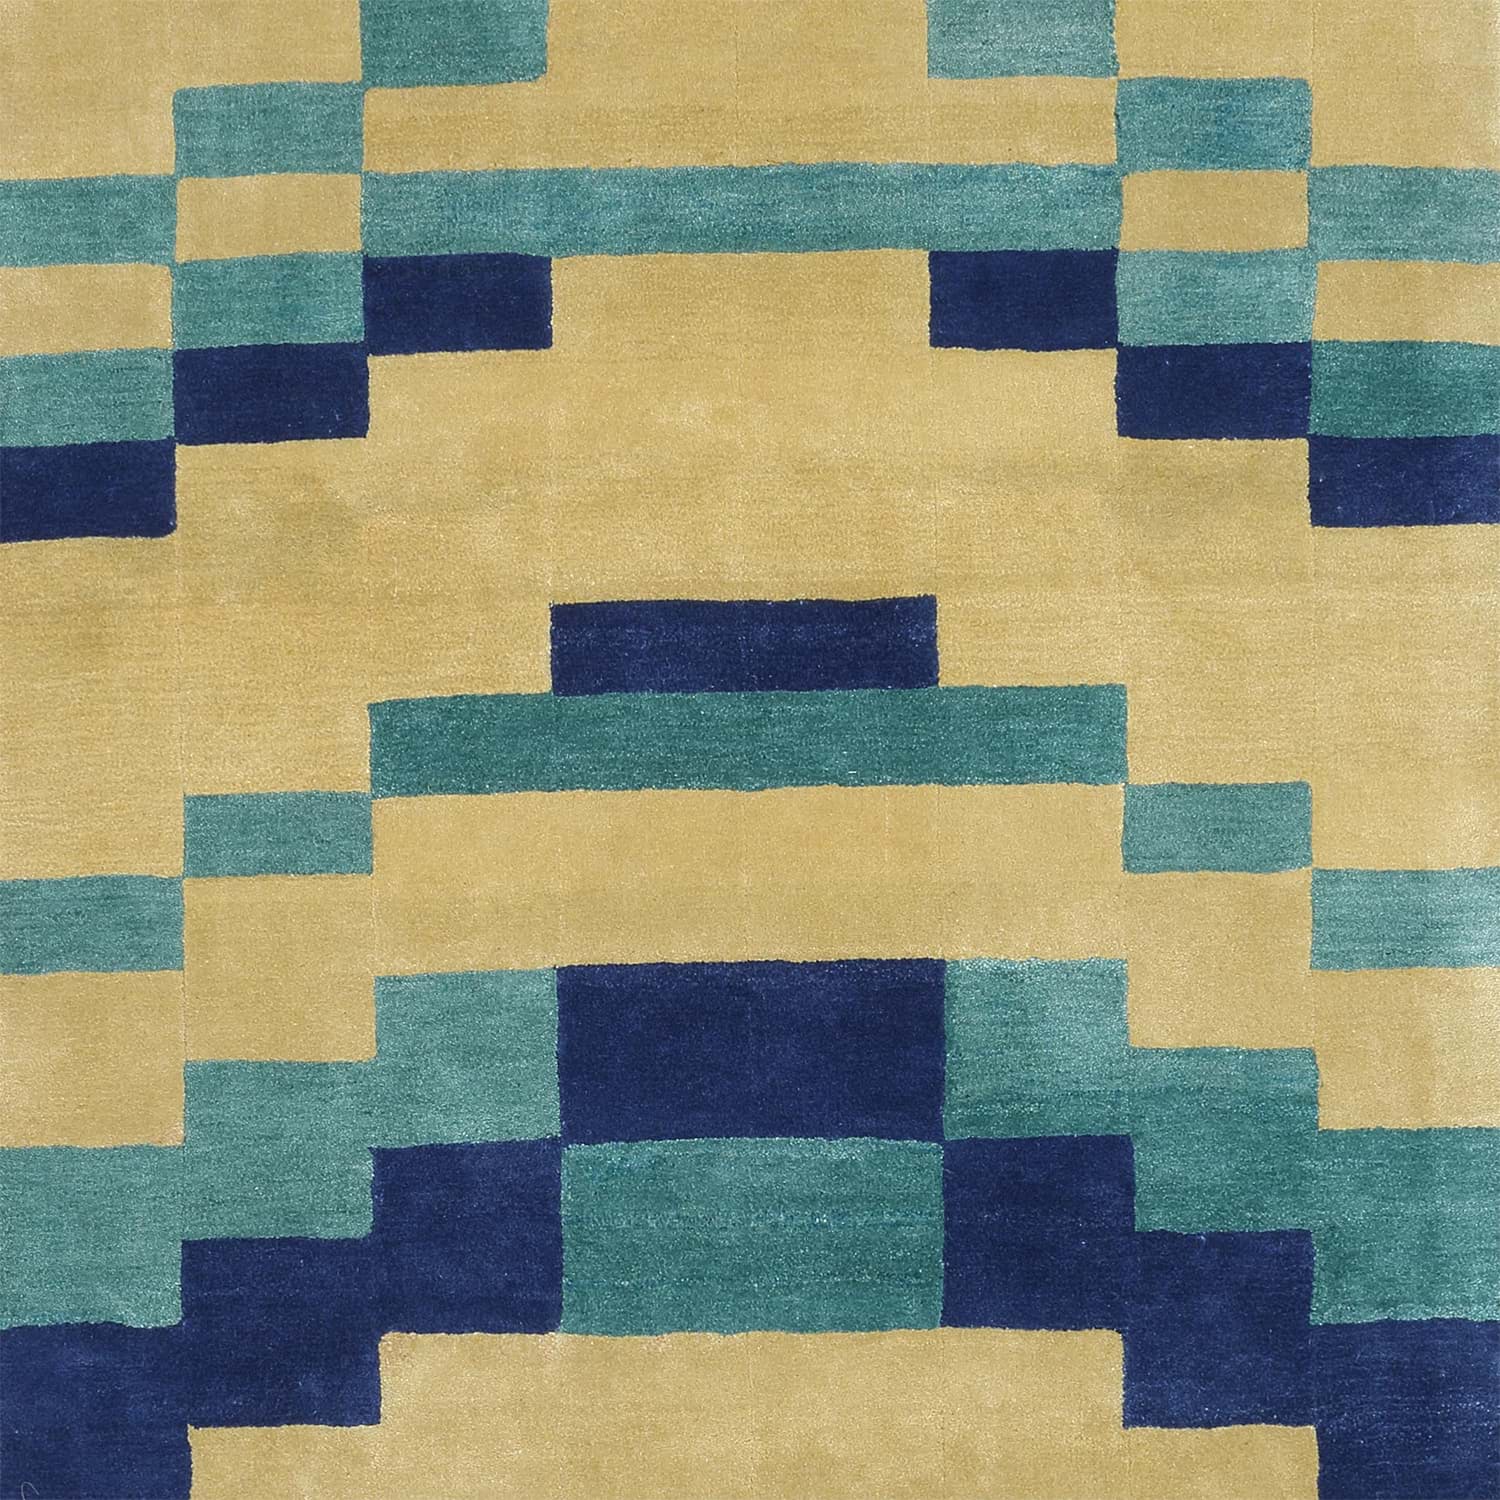 Anni Albers Bauhaus Rug Temple Emanu-El 2の画像